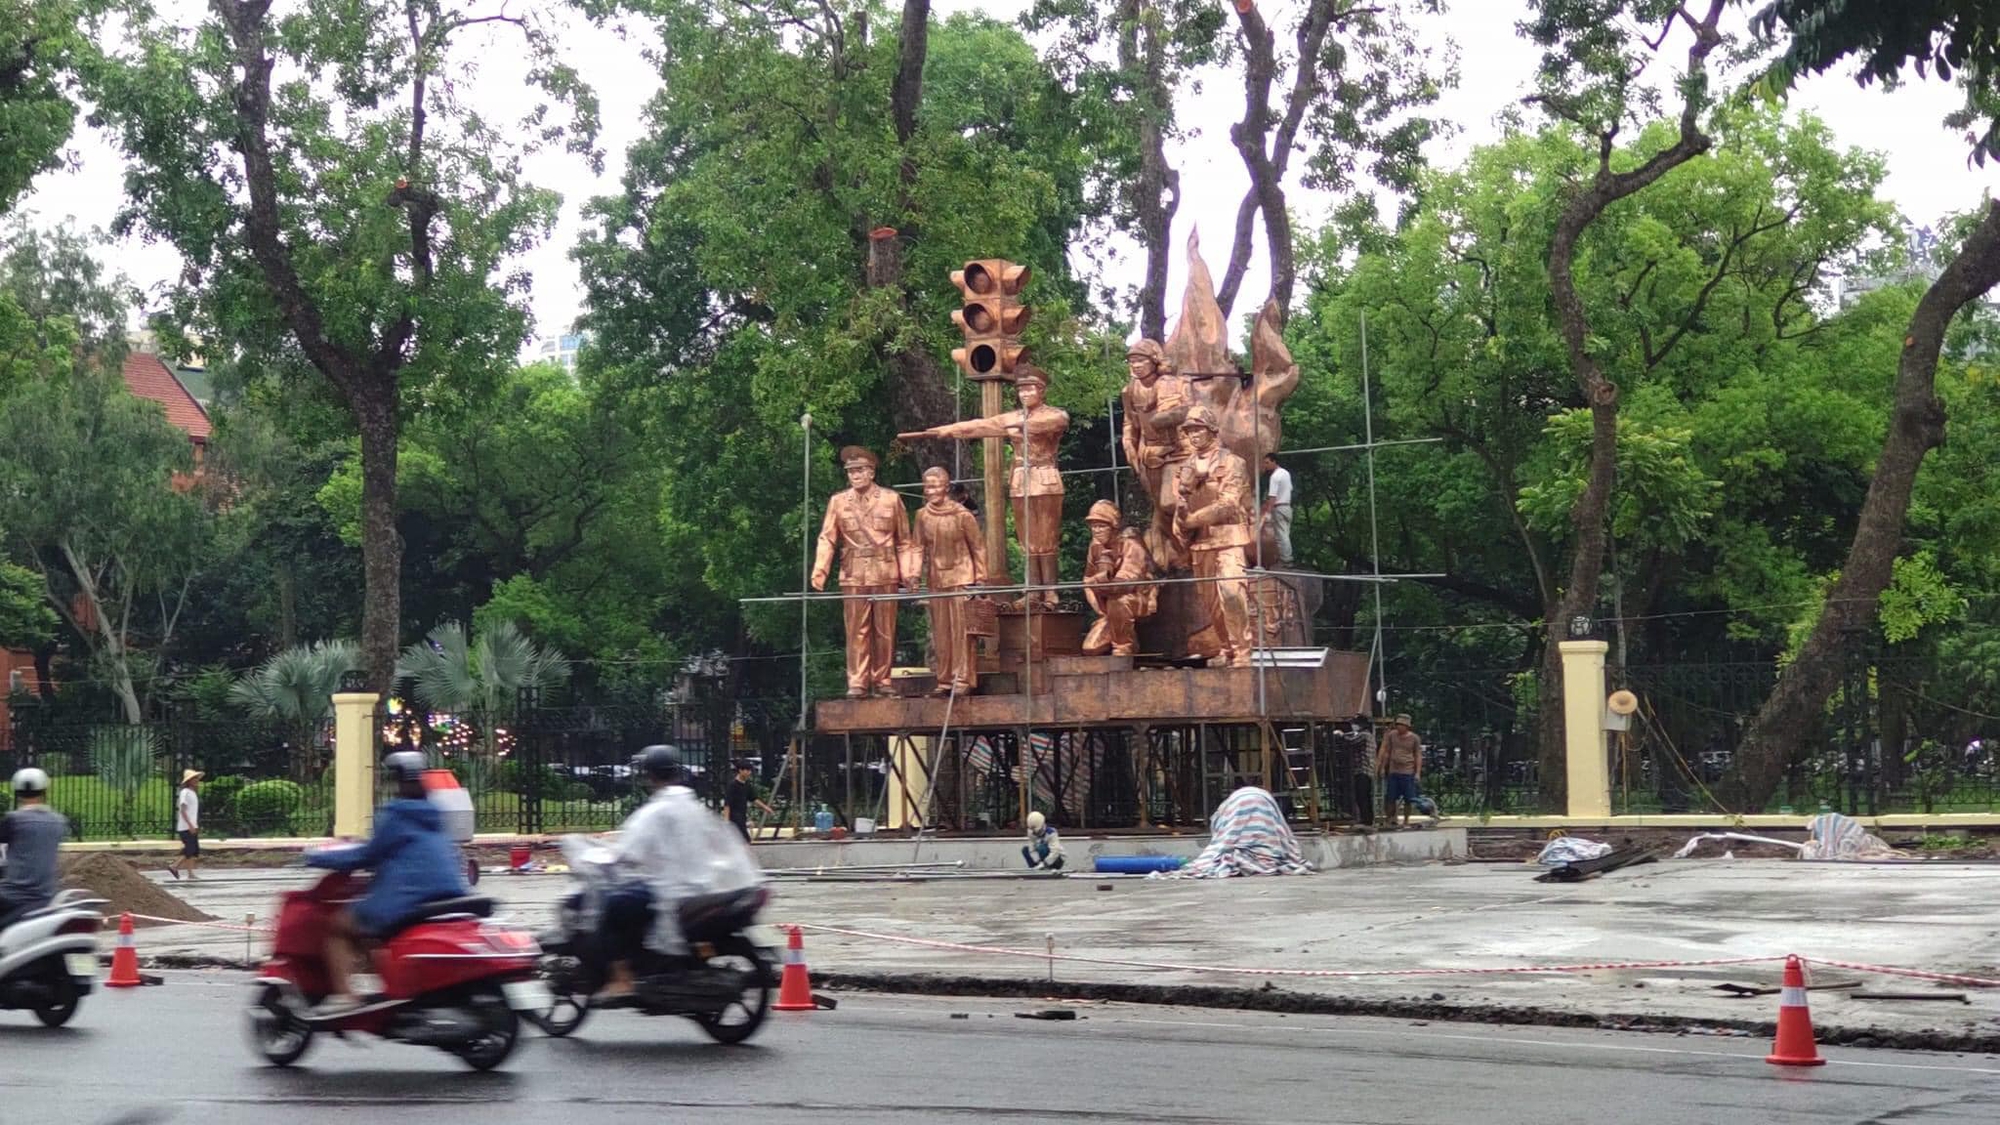 Tranh cãi về cụm tượng đài CSGT, PCCC ở Công viên Thống Nhất – Hà Nội: Sao chép và lắp ghép khiên cưỡng? - Ảnh 1.